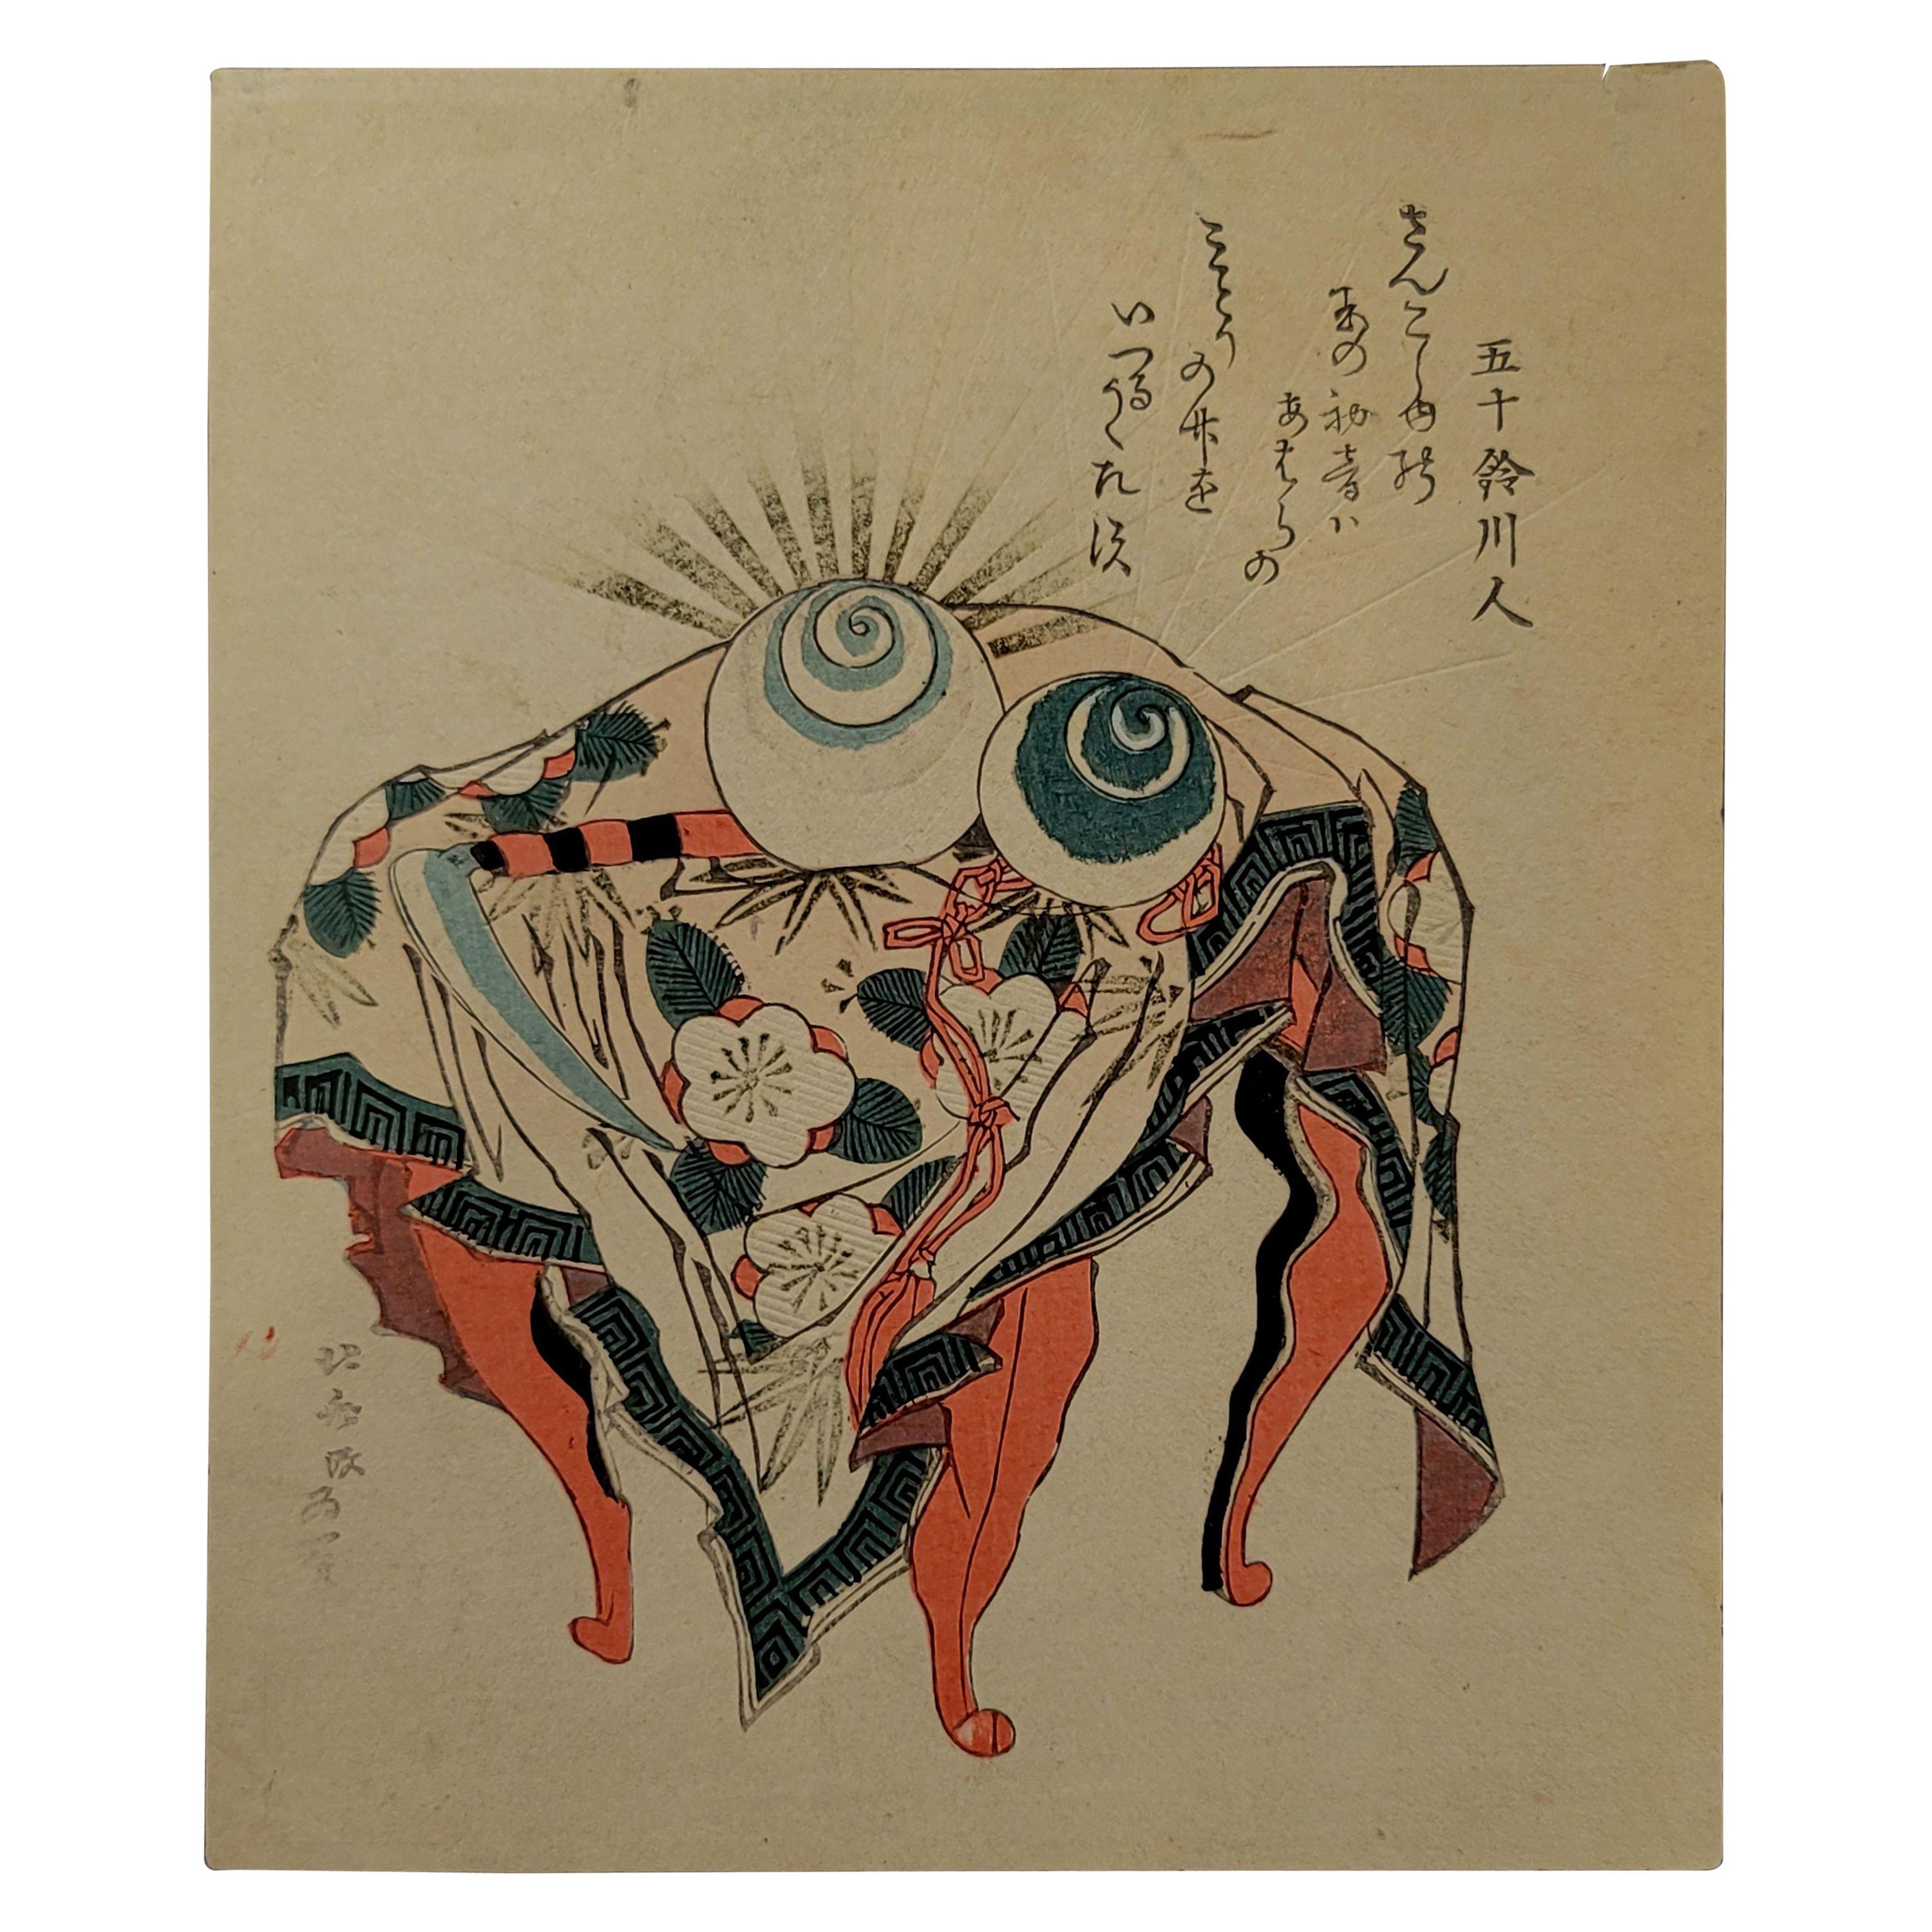 Japanese Woodblock Print by Hokusai Katsushika, 葛飾北齋 (1760~1849) For Sale